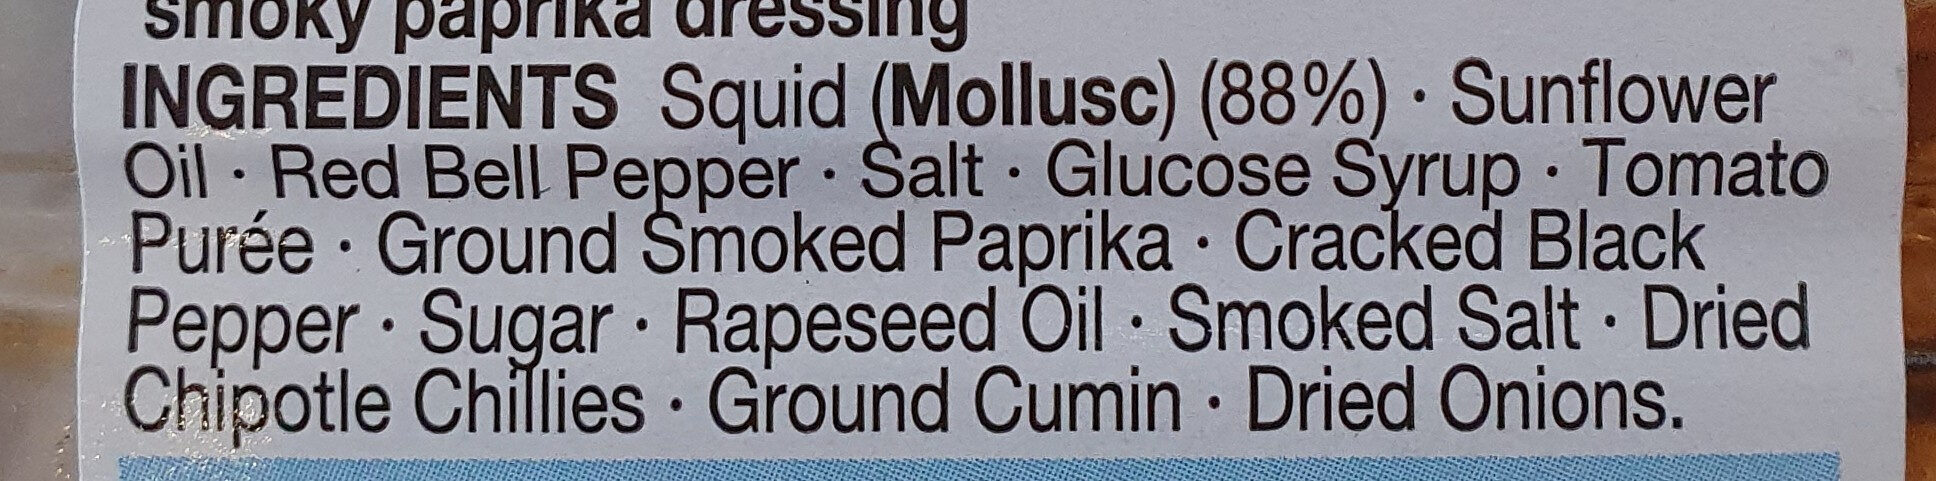 smoky Paprika calamari - Ingredients